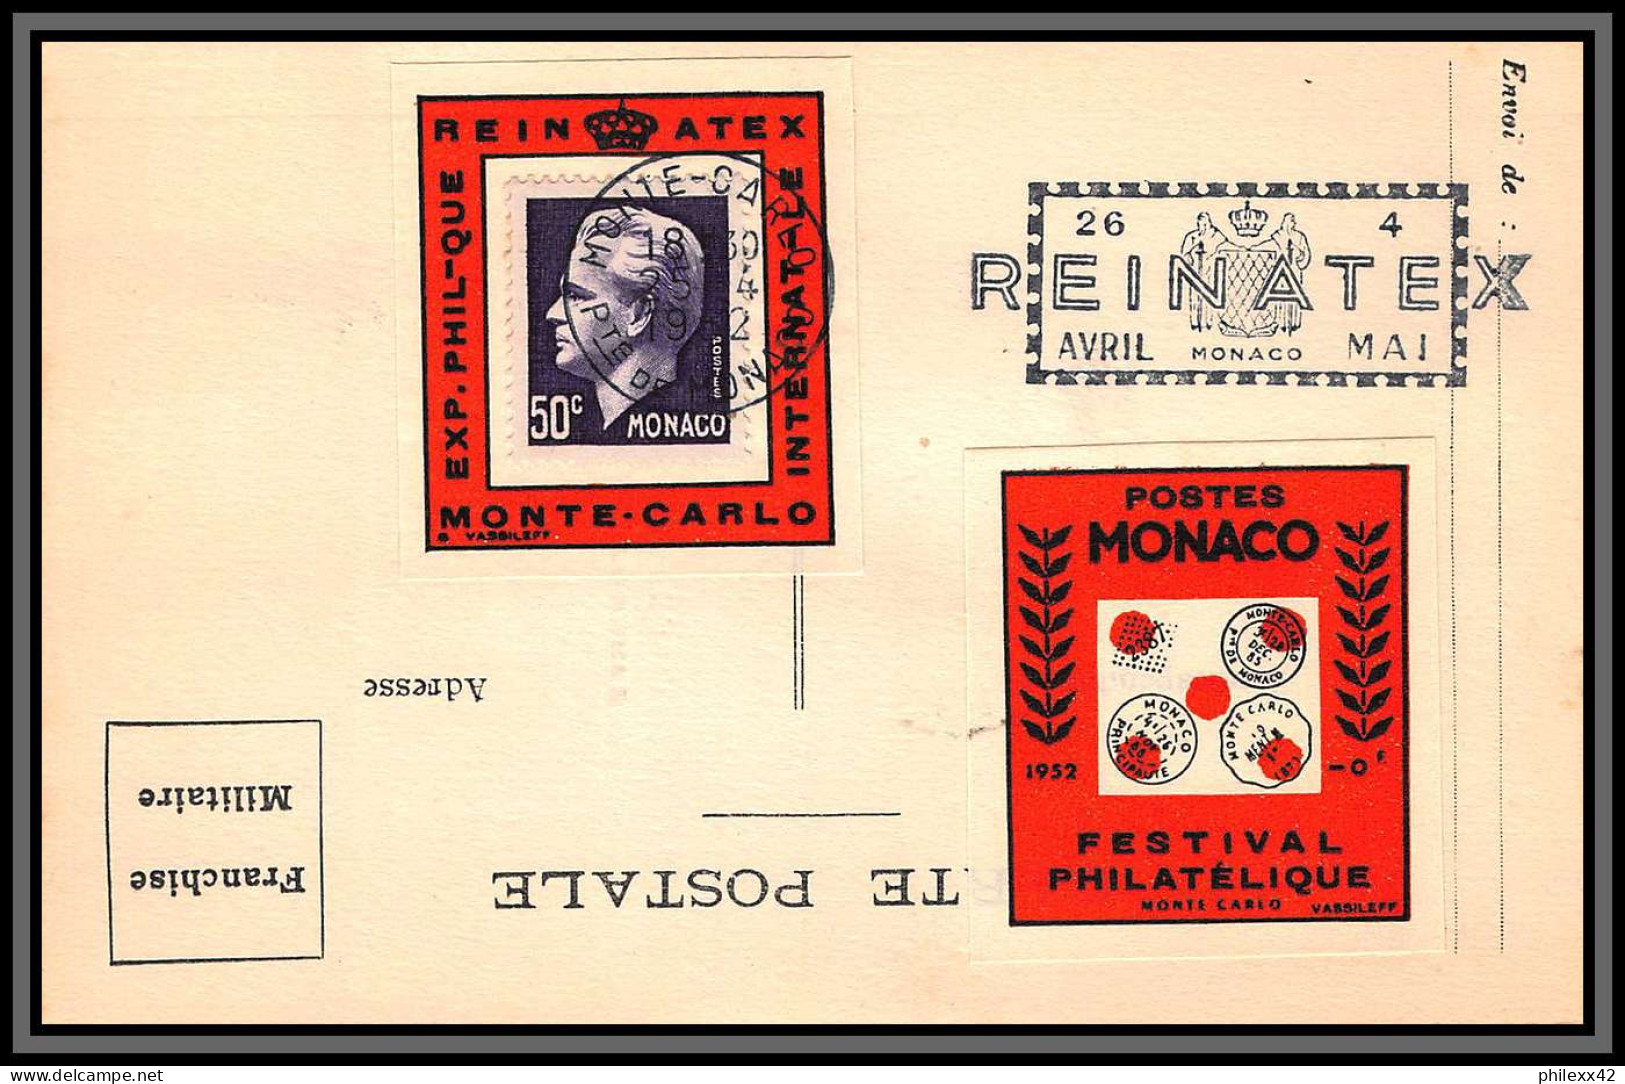 74926 (3) REINATEX 1952 joli lot collection vignette porte timbre stamp holder lettre cover Monaco france italia